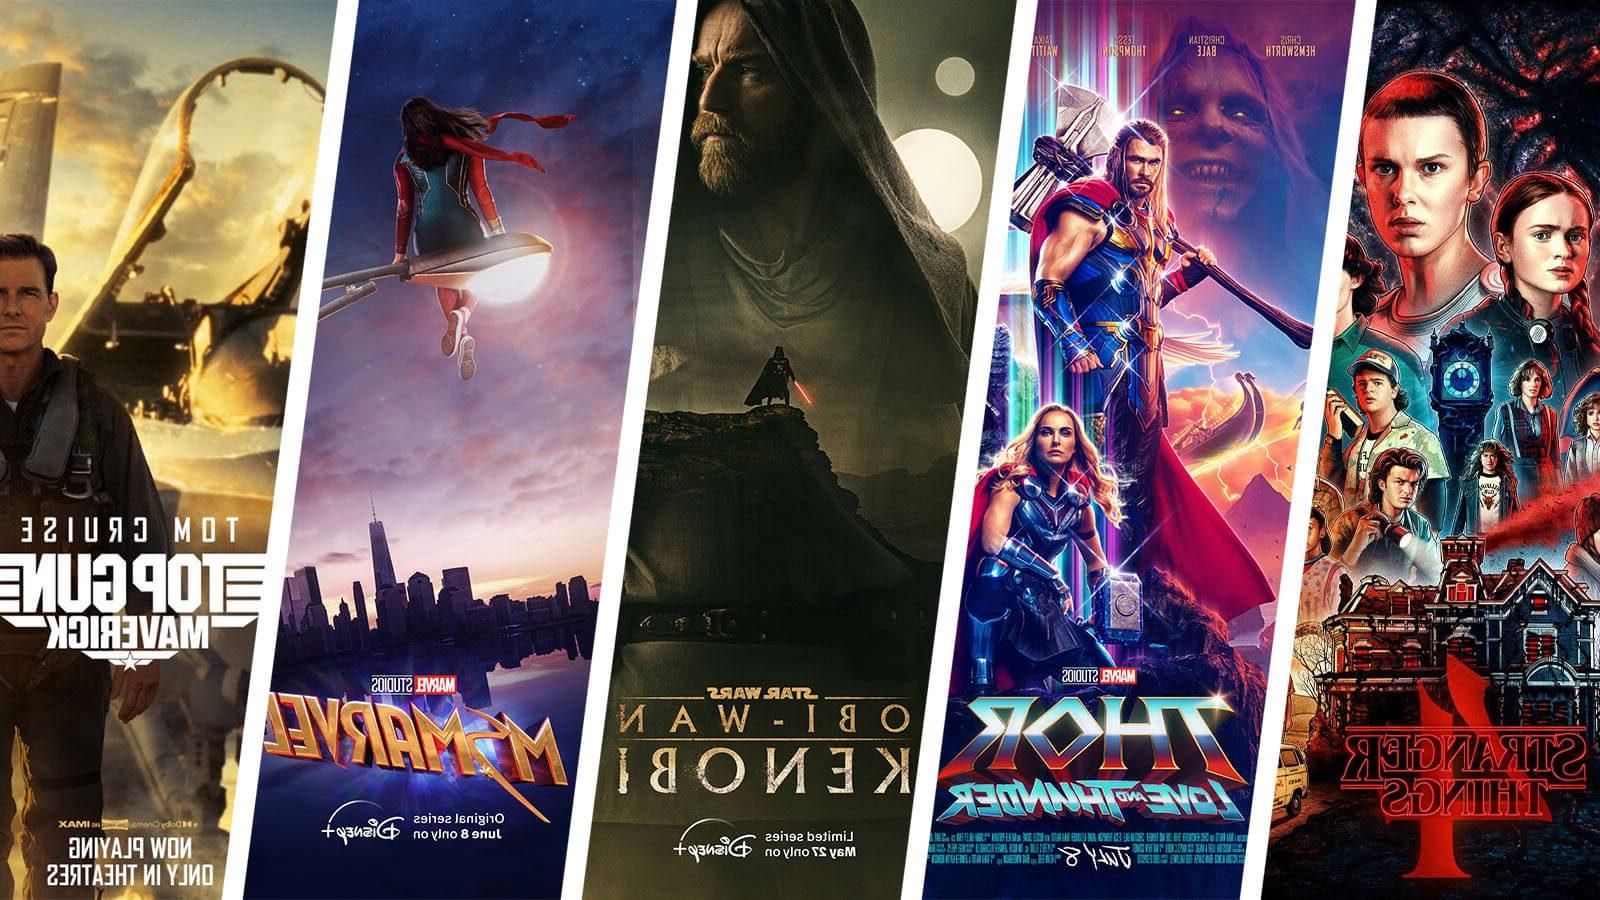 《怪奇物语4》(Stranger Things 4)、《雷神》(Thor)、《欧比旺·克诺比》(Obi-Wan Kenobi)、《哈利波特》(哈利波特)等电影海报. 《漫威》和《壮志凌云:特立独行》.